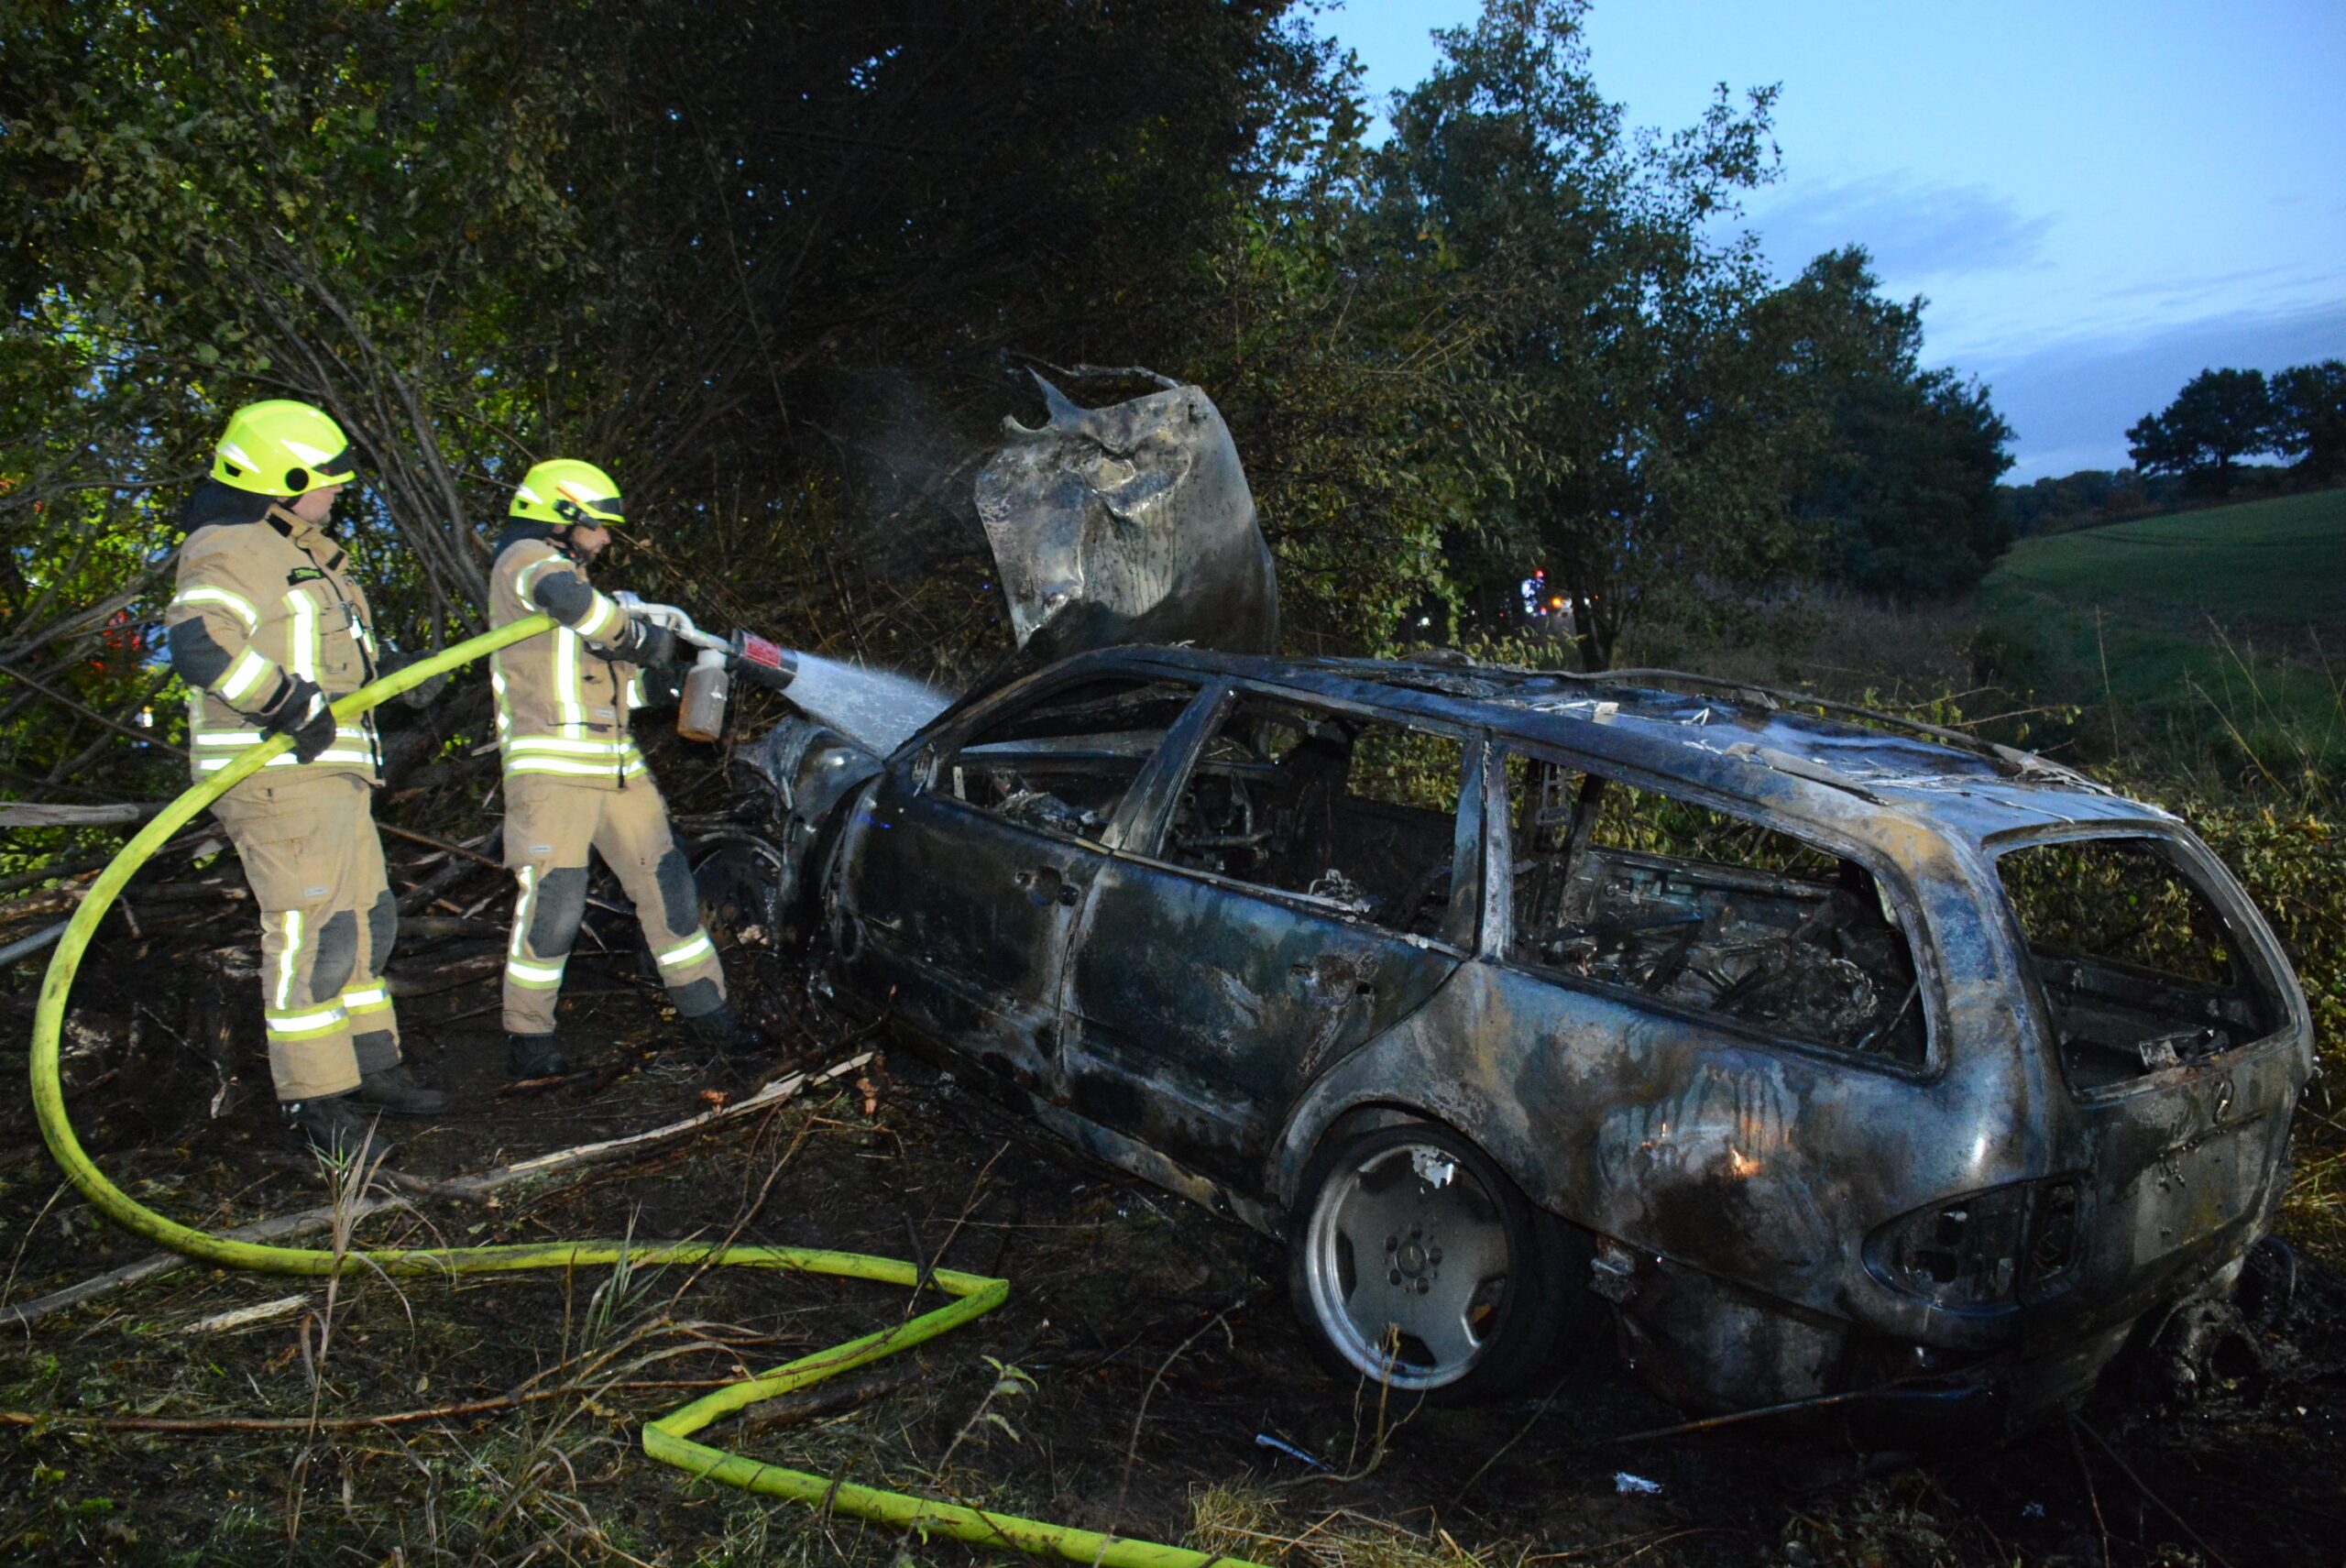 Feuerwehrmänner löschen den brennenden Mercedes. Der Fahrer soll alkoholisiert gewesen sein.